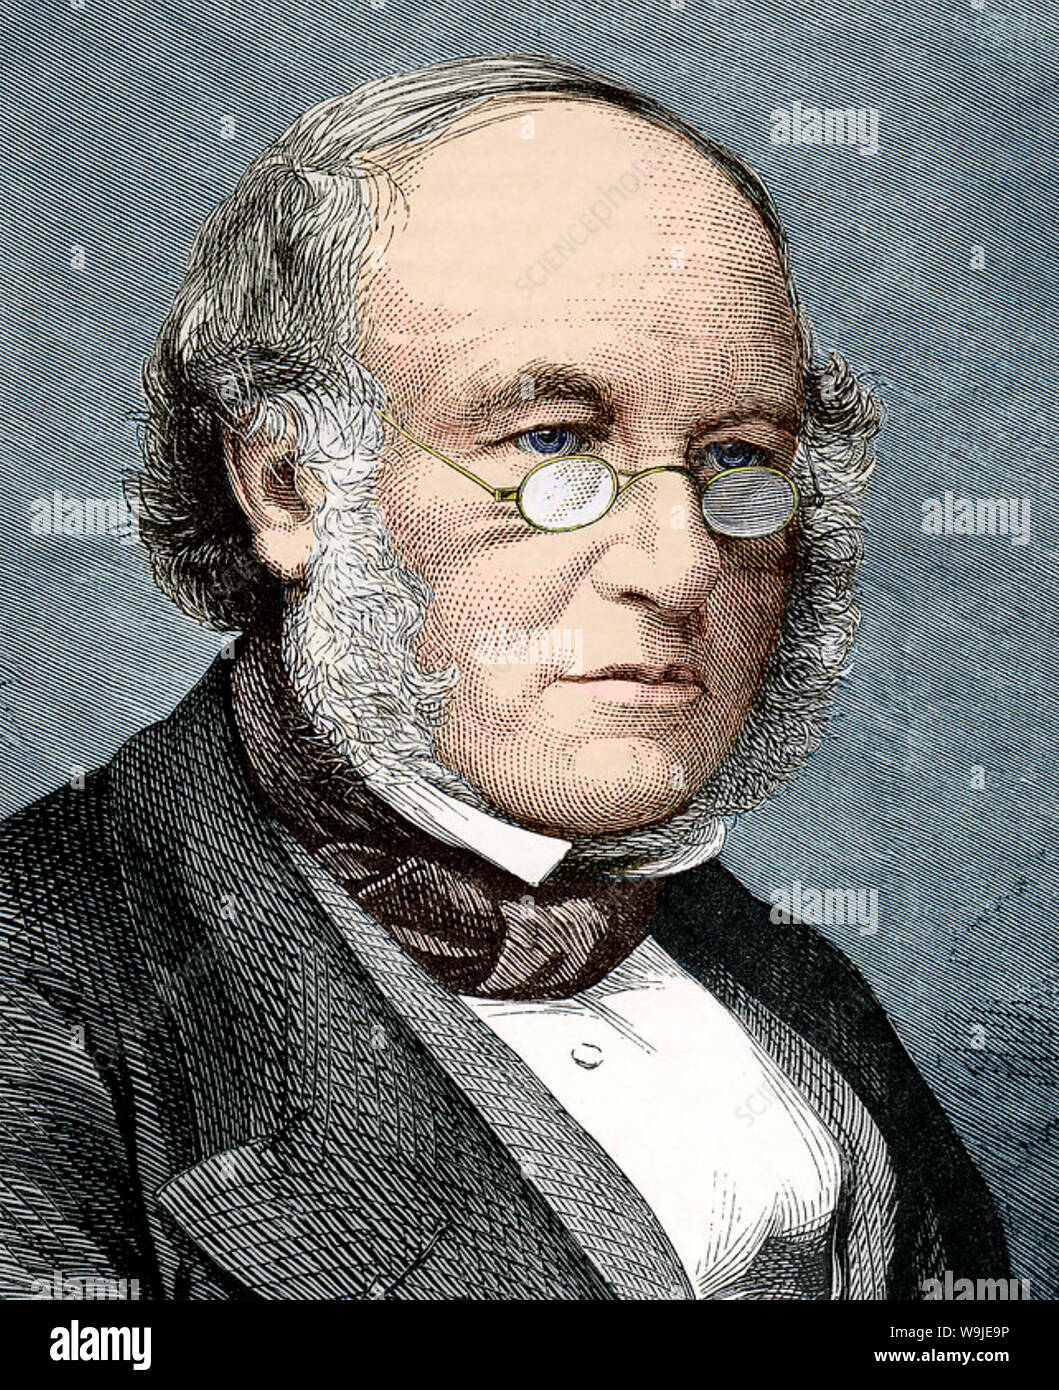 ROWLAND HILL (1795-1879), profesor de inglés, inventor y pionero del servicio postal Foto de stock